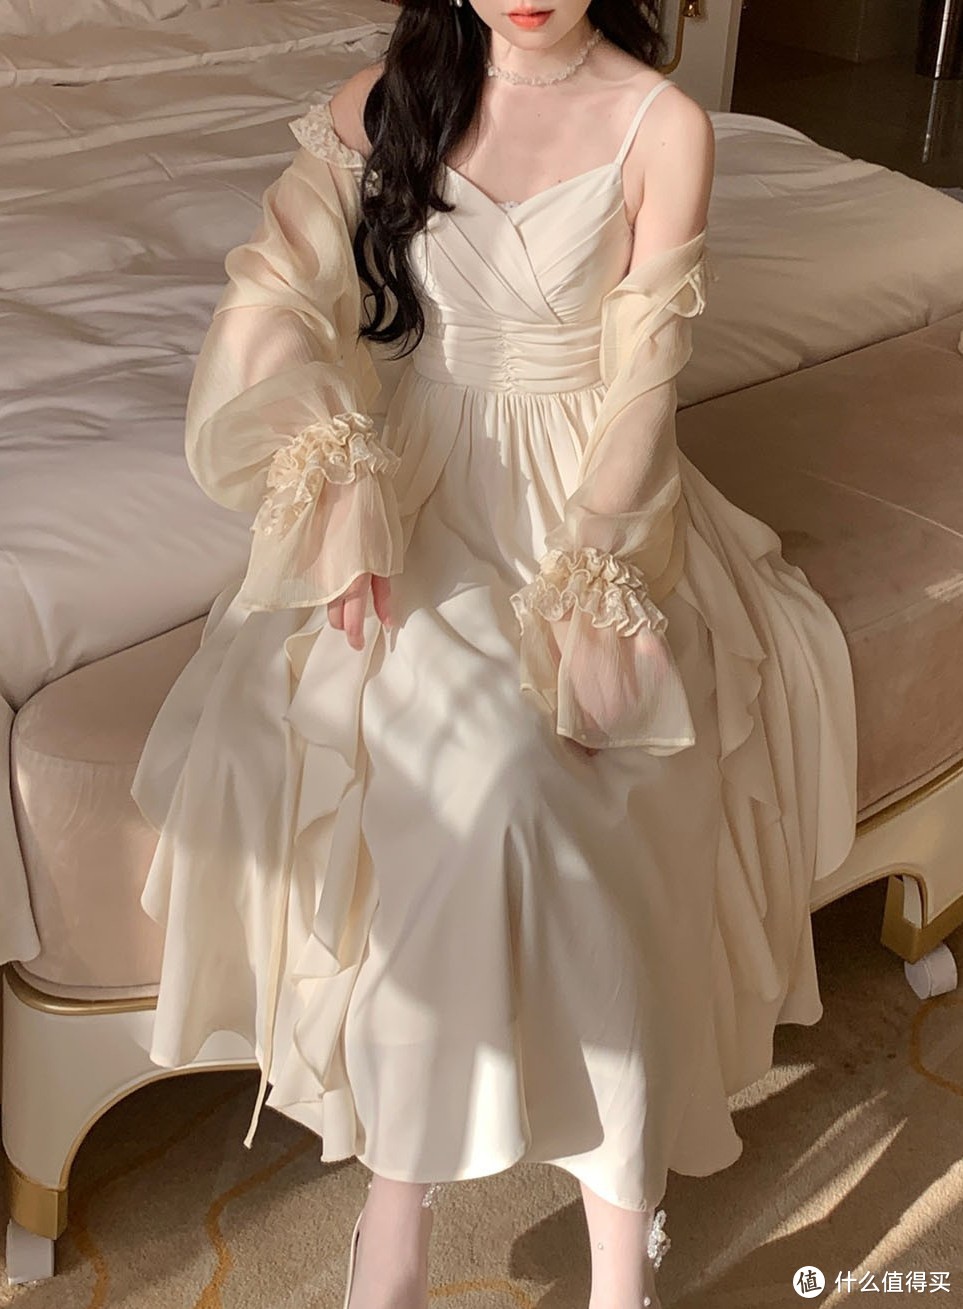 要用最漂亮裙子来迎接夏天(˵¯͒〰¯͒˵)之白色吊带裙系列